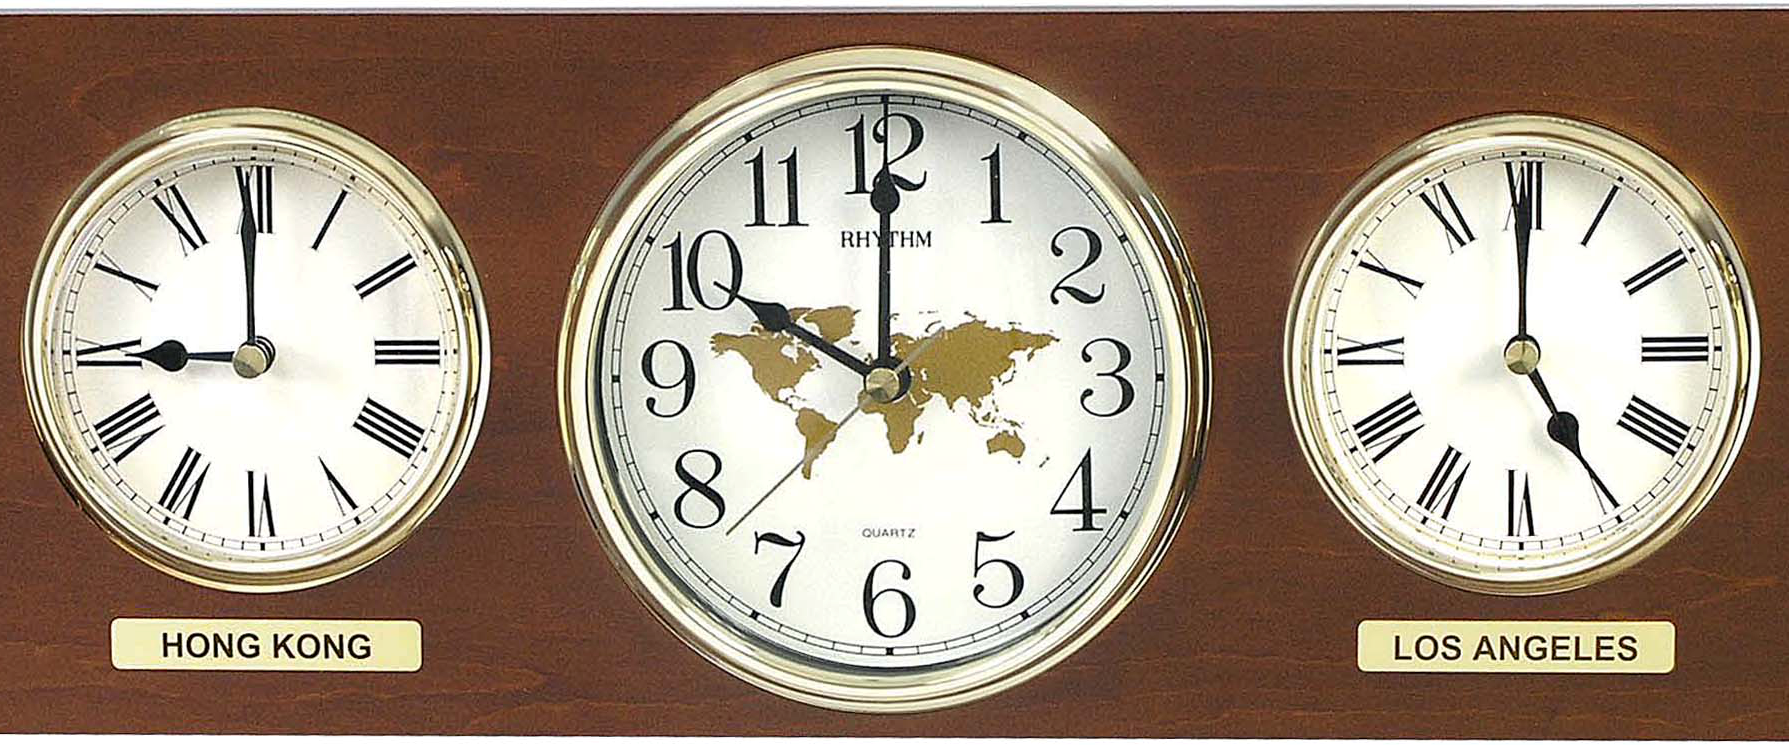 Часы для разных часовых поясов. Фото с сайта sellpo24.ru